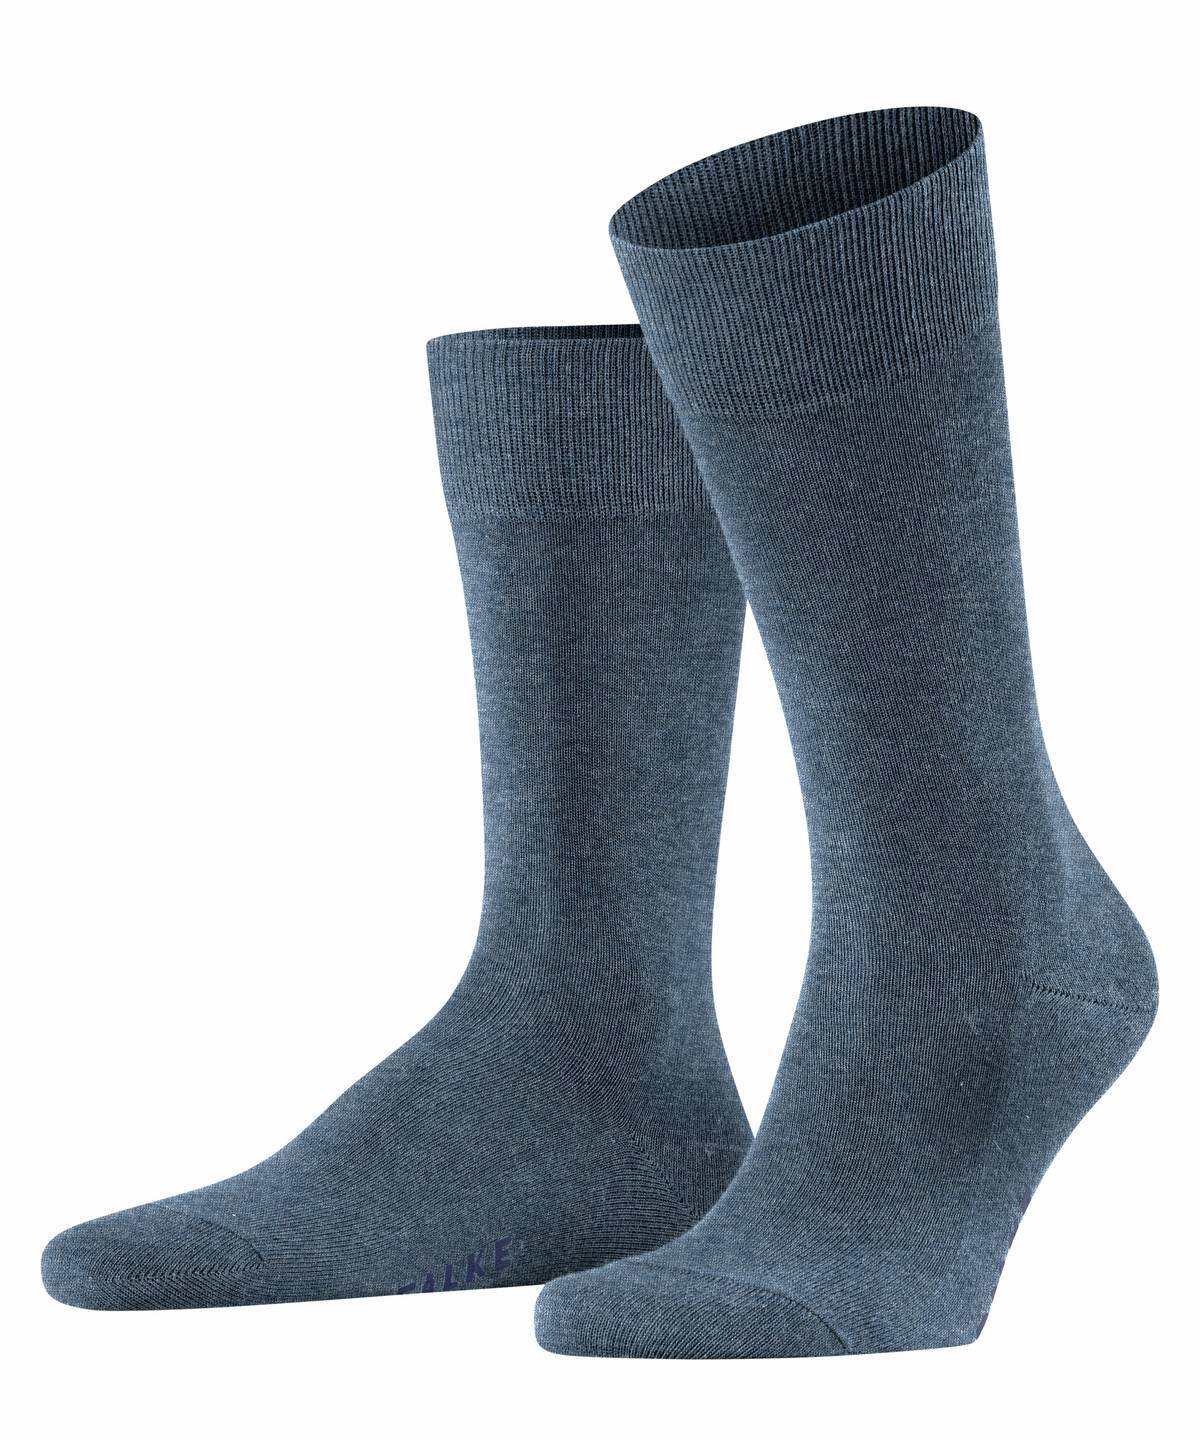 Falke Herren Socken Hersteller: Falke Bestellnummer:4031309170497